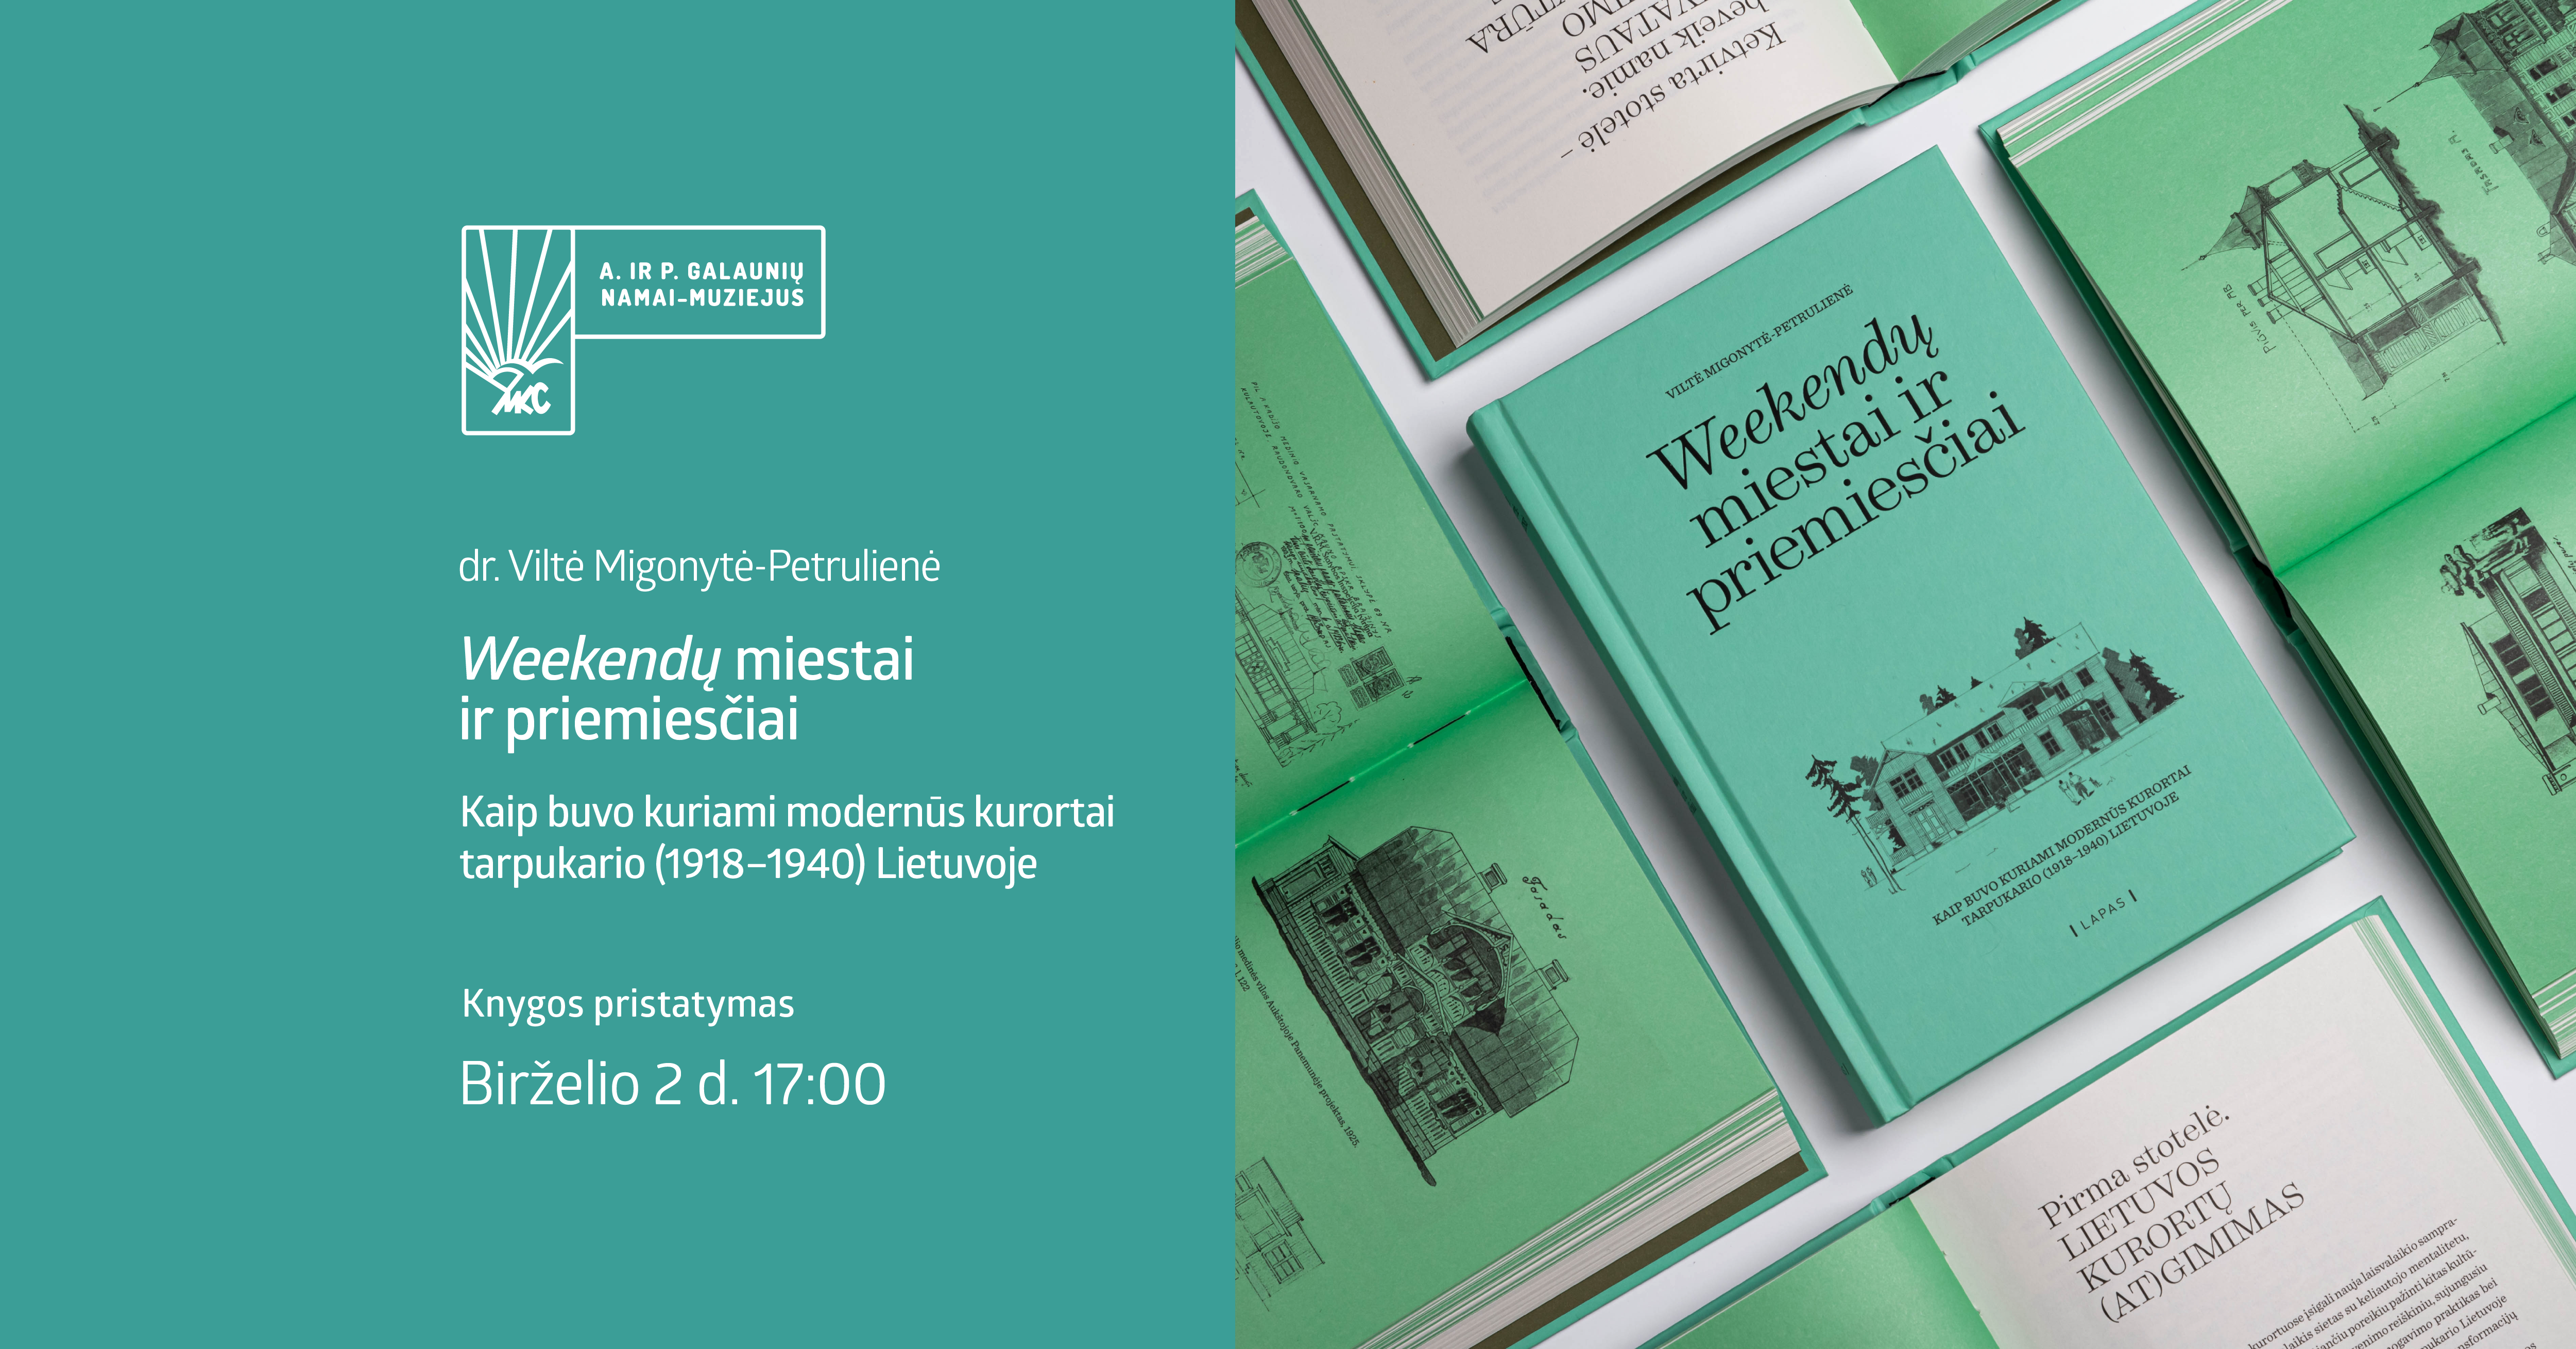 Dr. Viltės Migonytės-Petrulienės knygos ,,Weekendų miestai ir priemiesčiai" pristatymas